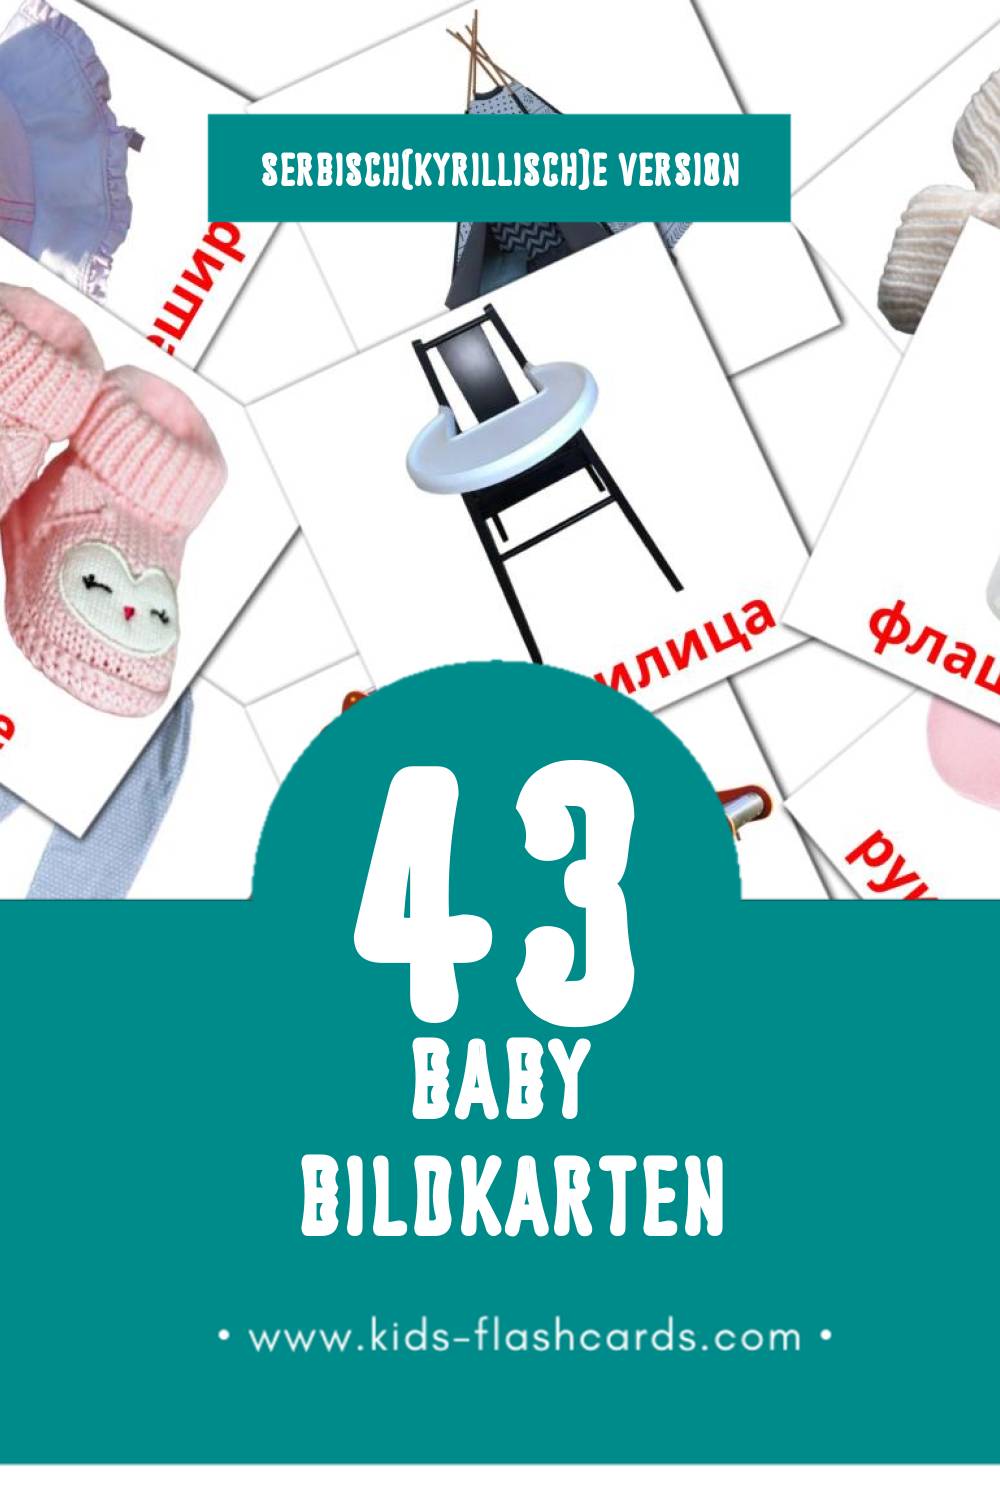 Visual Беба Flashcards für Kleinkinder (43 Karten in Serbisch(kyrillisch))